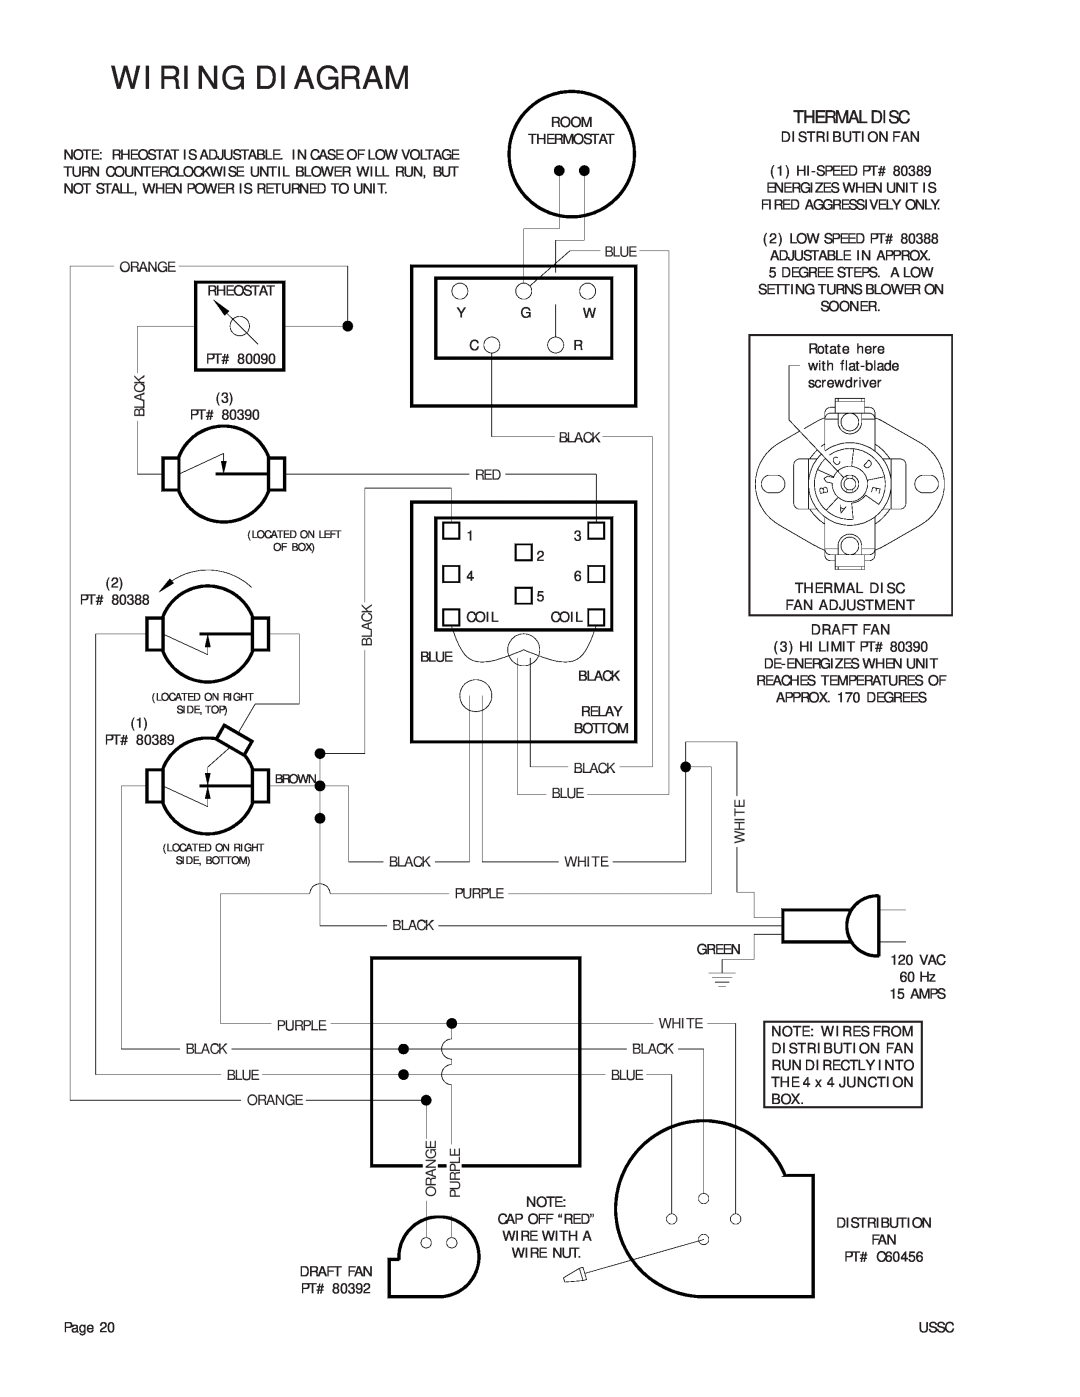 United States Stove 24AZ, 24AG, 24AF owner manual Wiring Diagram, Thermal Disc, Distribution Fan, Fan Adjustment, Draft Fan 